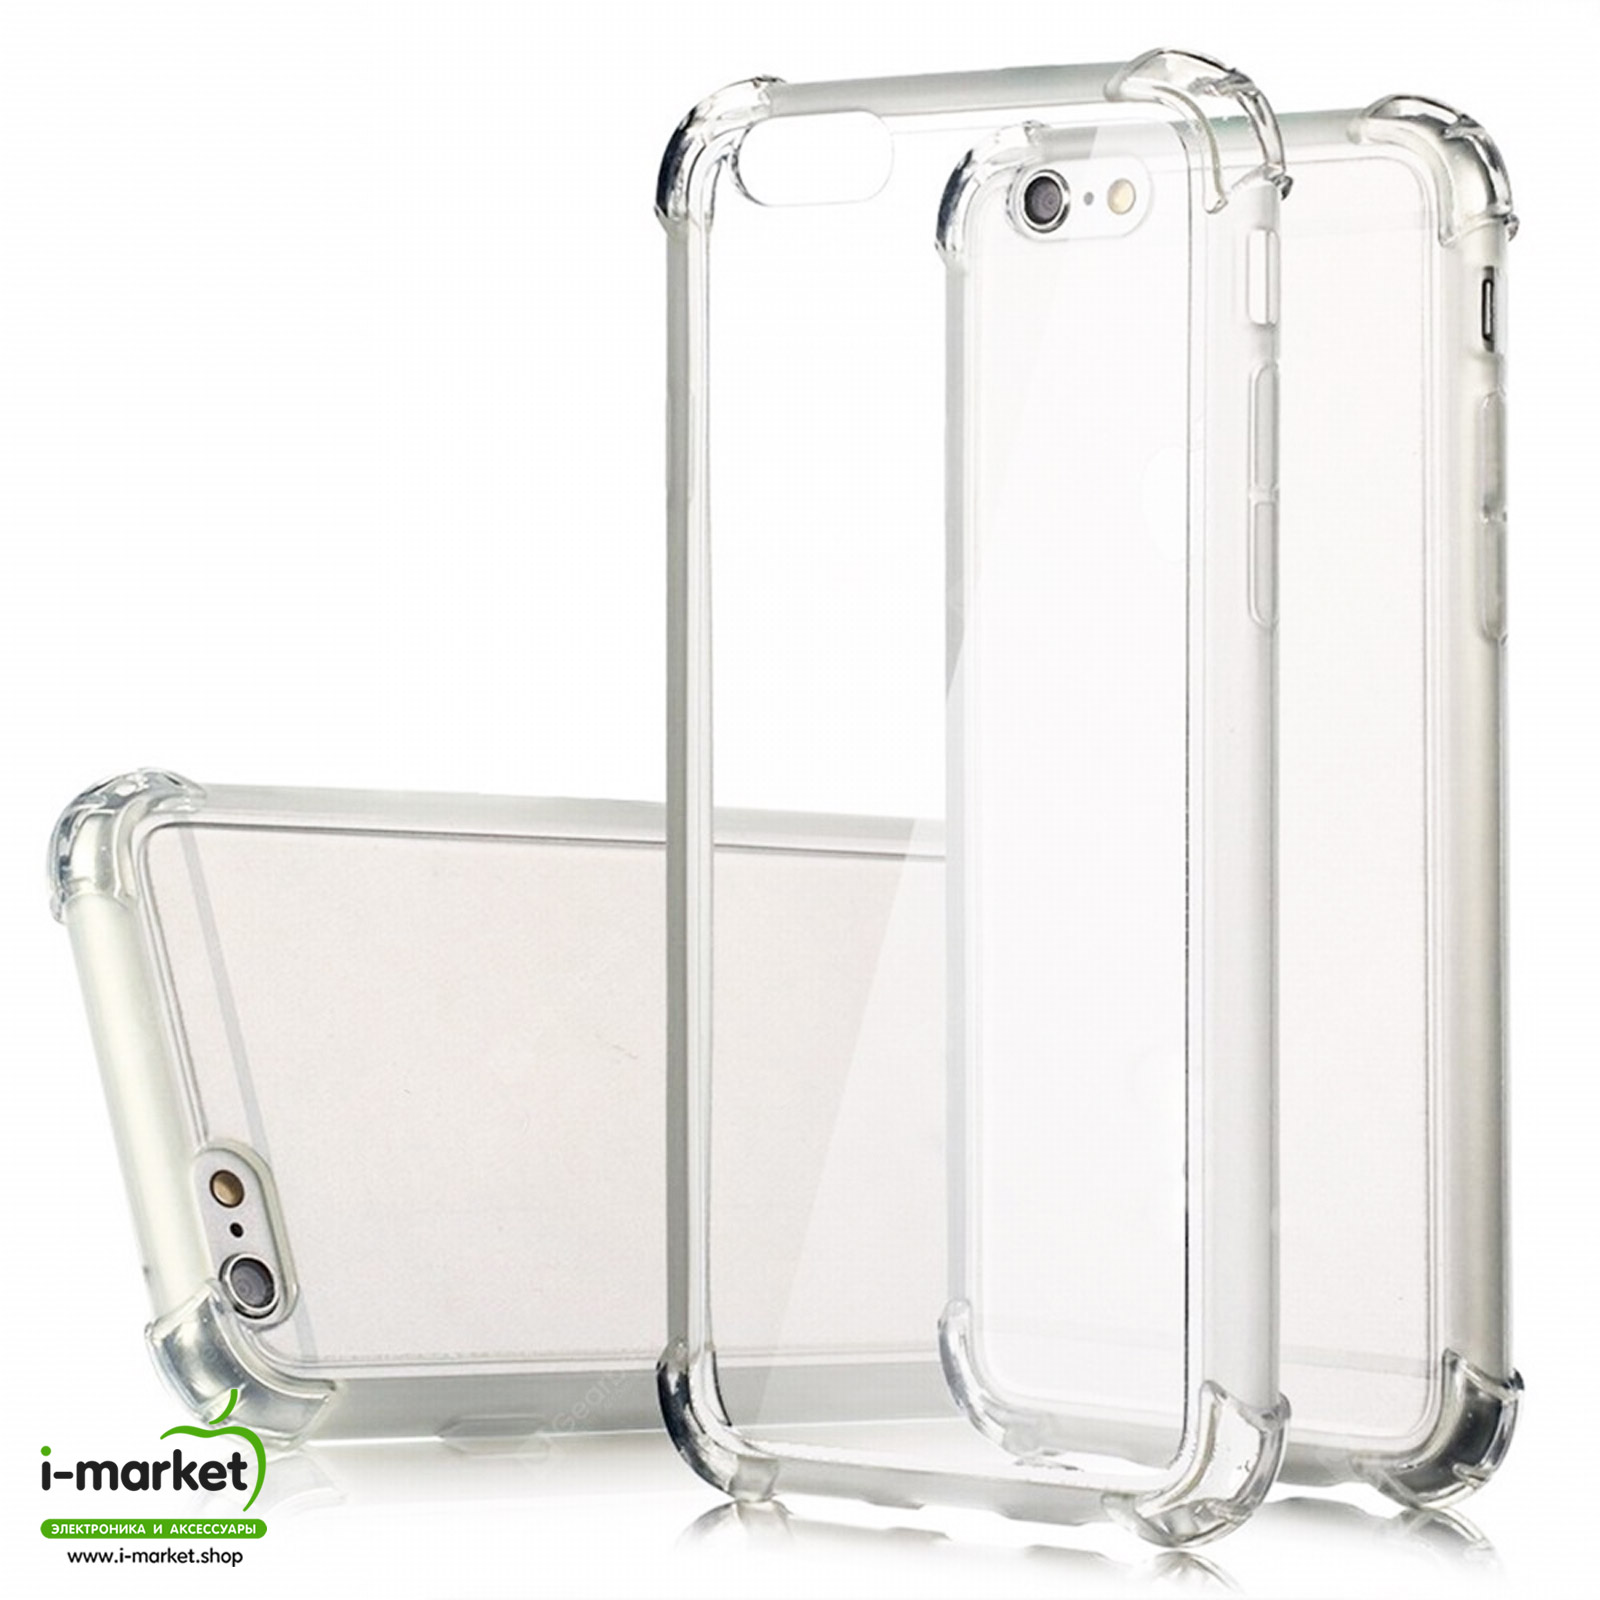 Чехол накладка для APPLE iPhone 6 Plus, iPhone 6S Plus, силикон, противоударный, прозрачный.